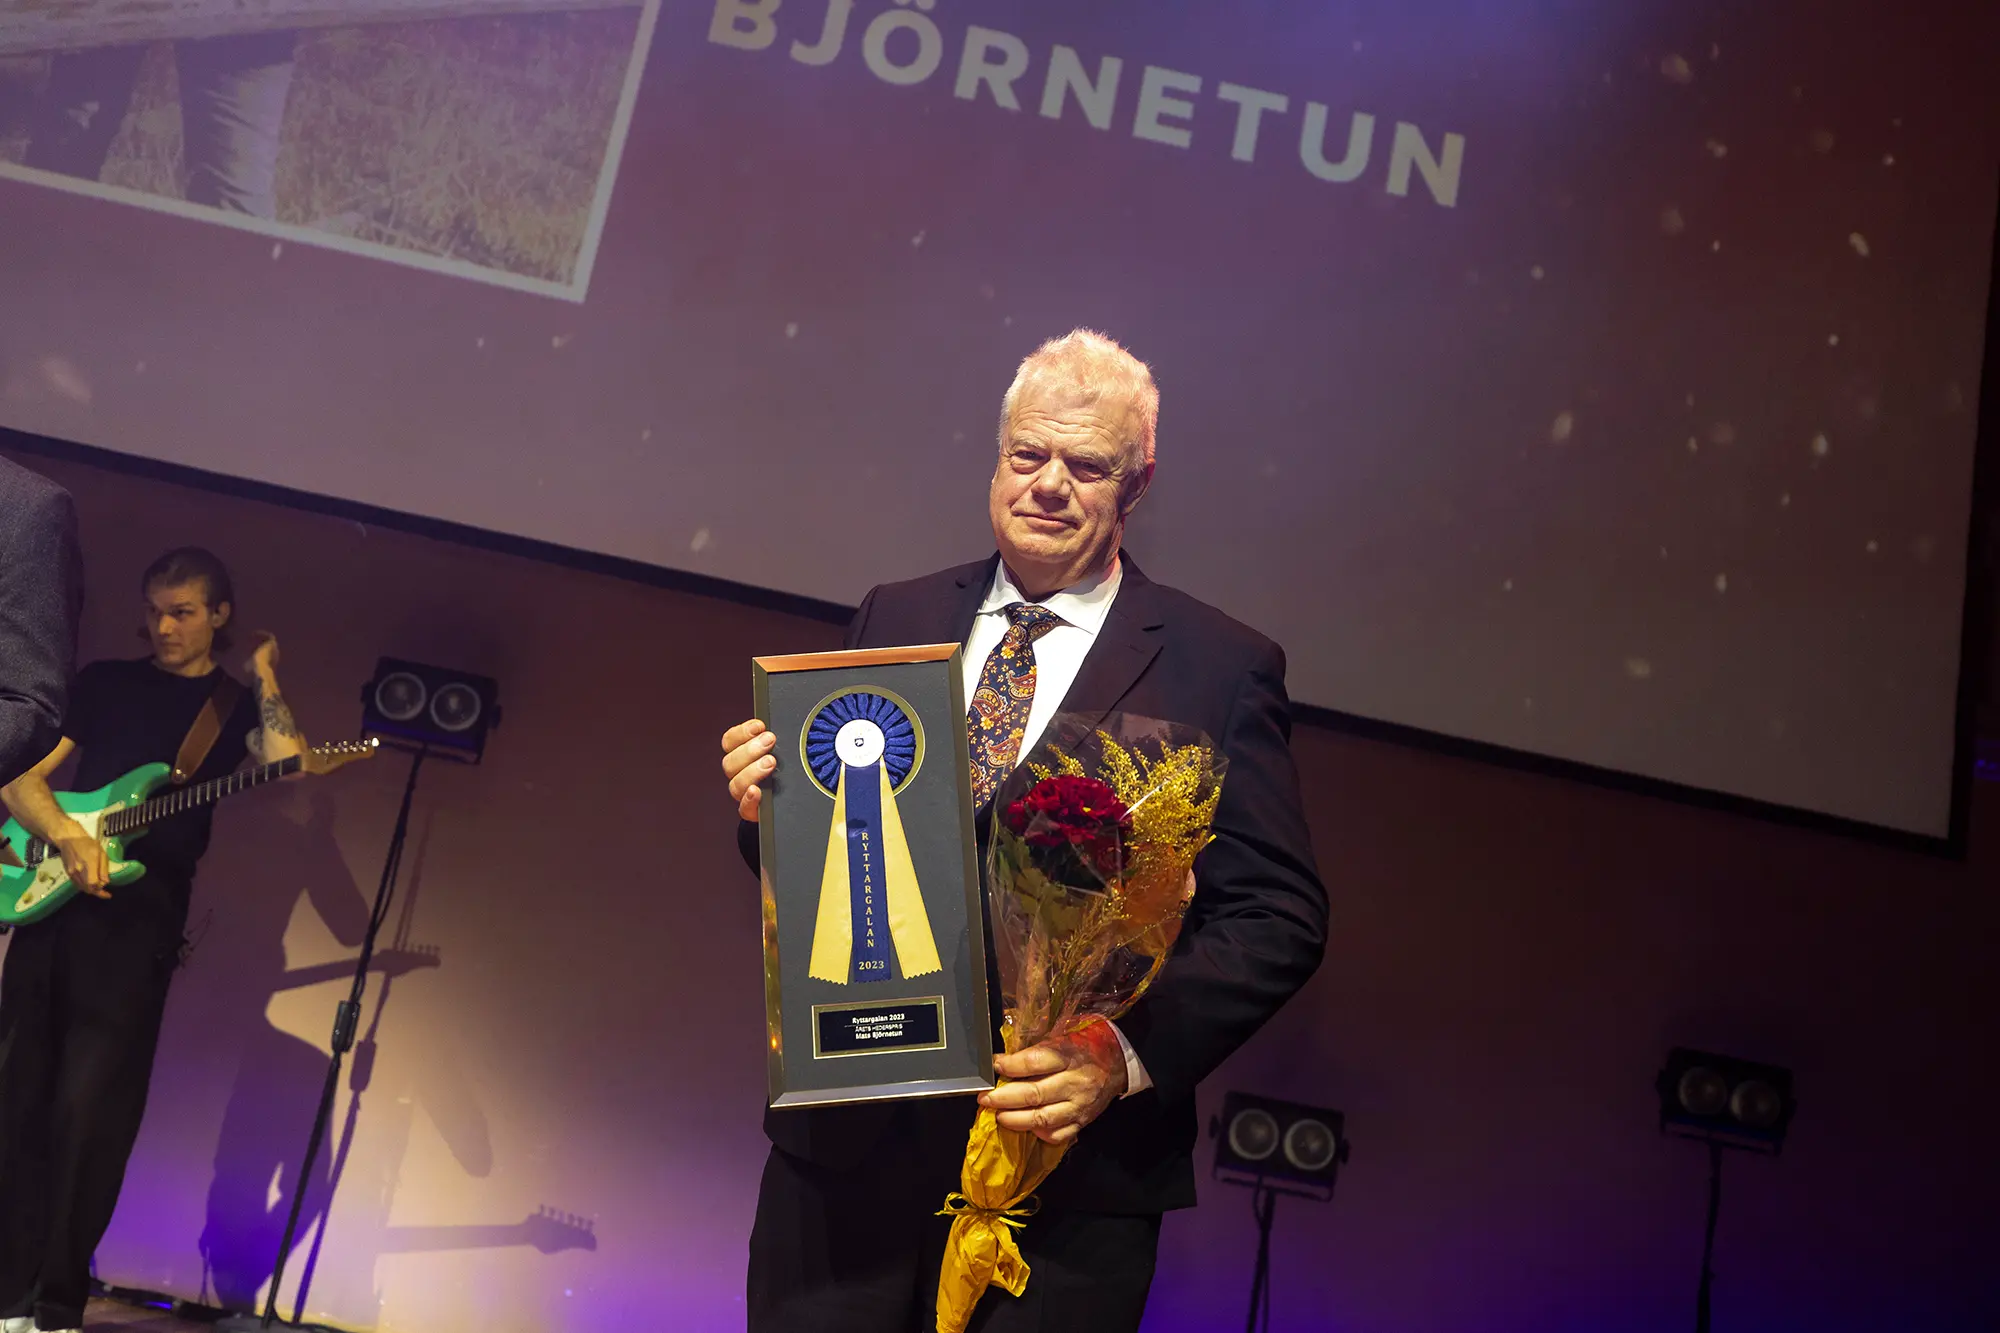 Mats Björnetun förändrade fälttävlan i ggrunden med sin uppfinning MiM som gör fasta hinder rivningsbara. För det vann han utmärkelsen Årets Hederspris på Ridsportgalan 2023.